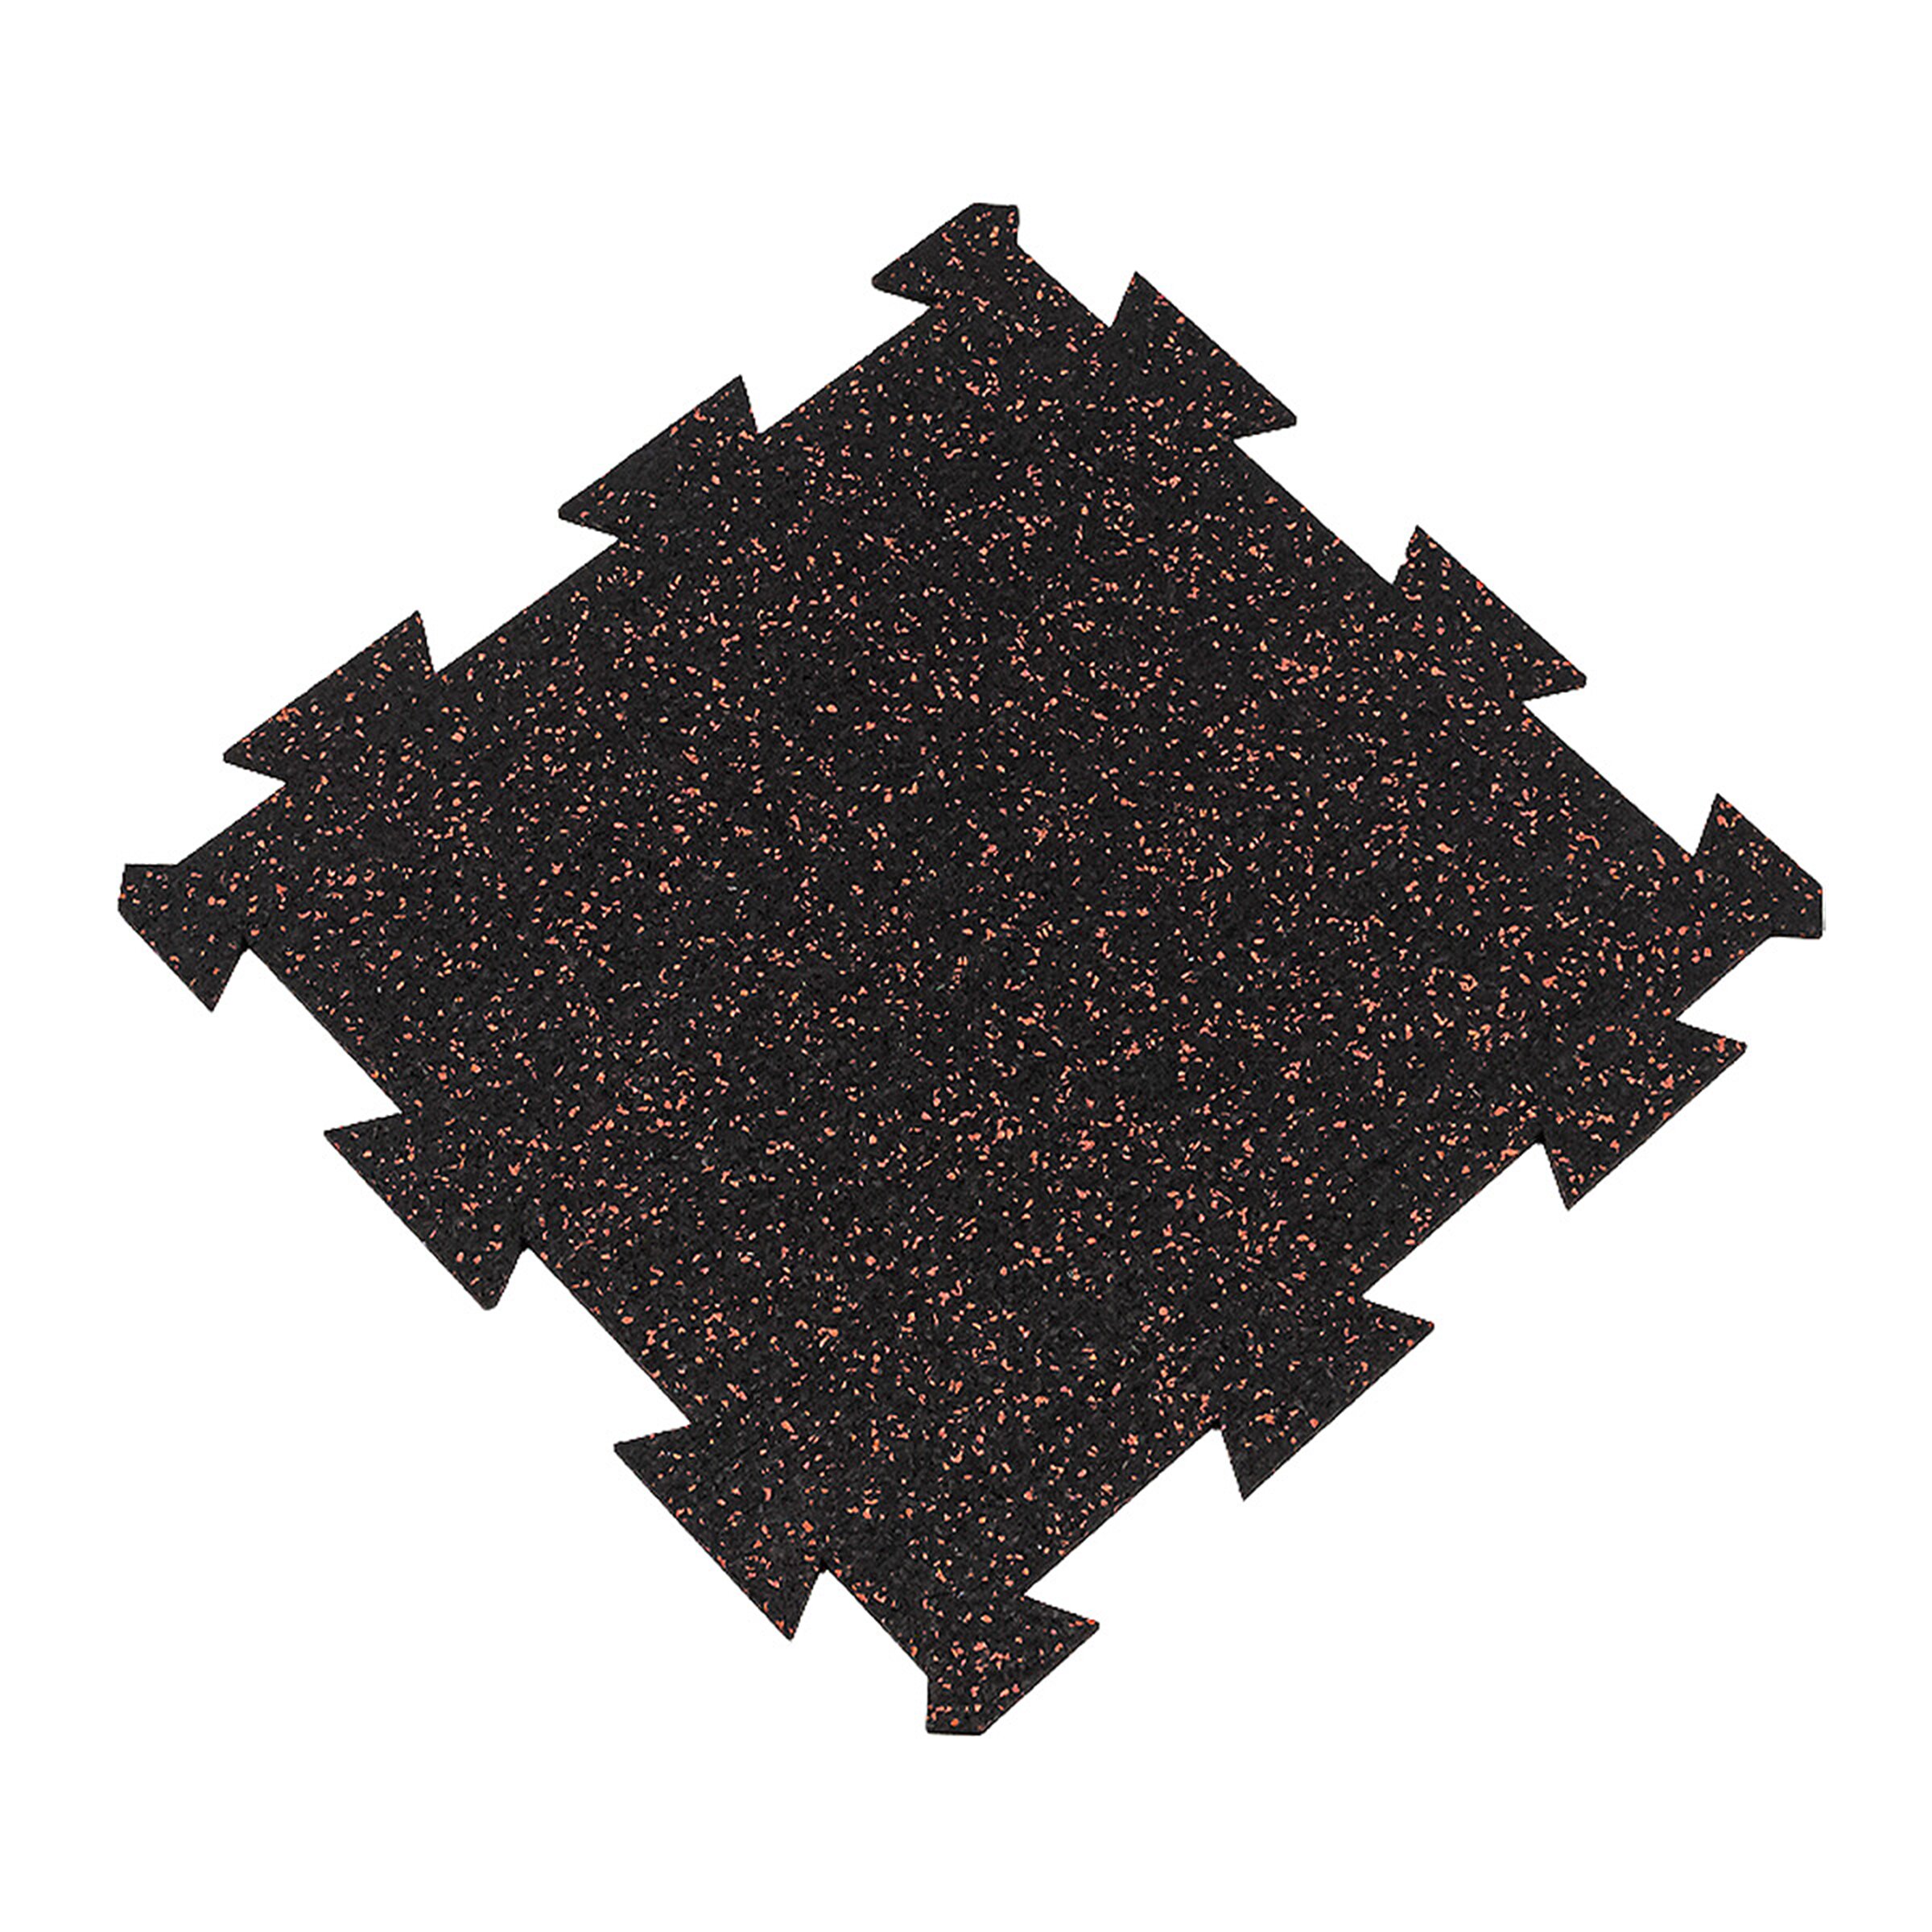 Černo-červená gumová modulová puzzle dlažba FLOMA FitFlo SF1050 - délka 50 cm, šířka 50 cm, výška 0,8 cm